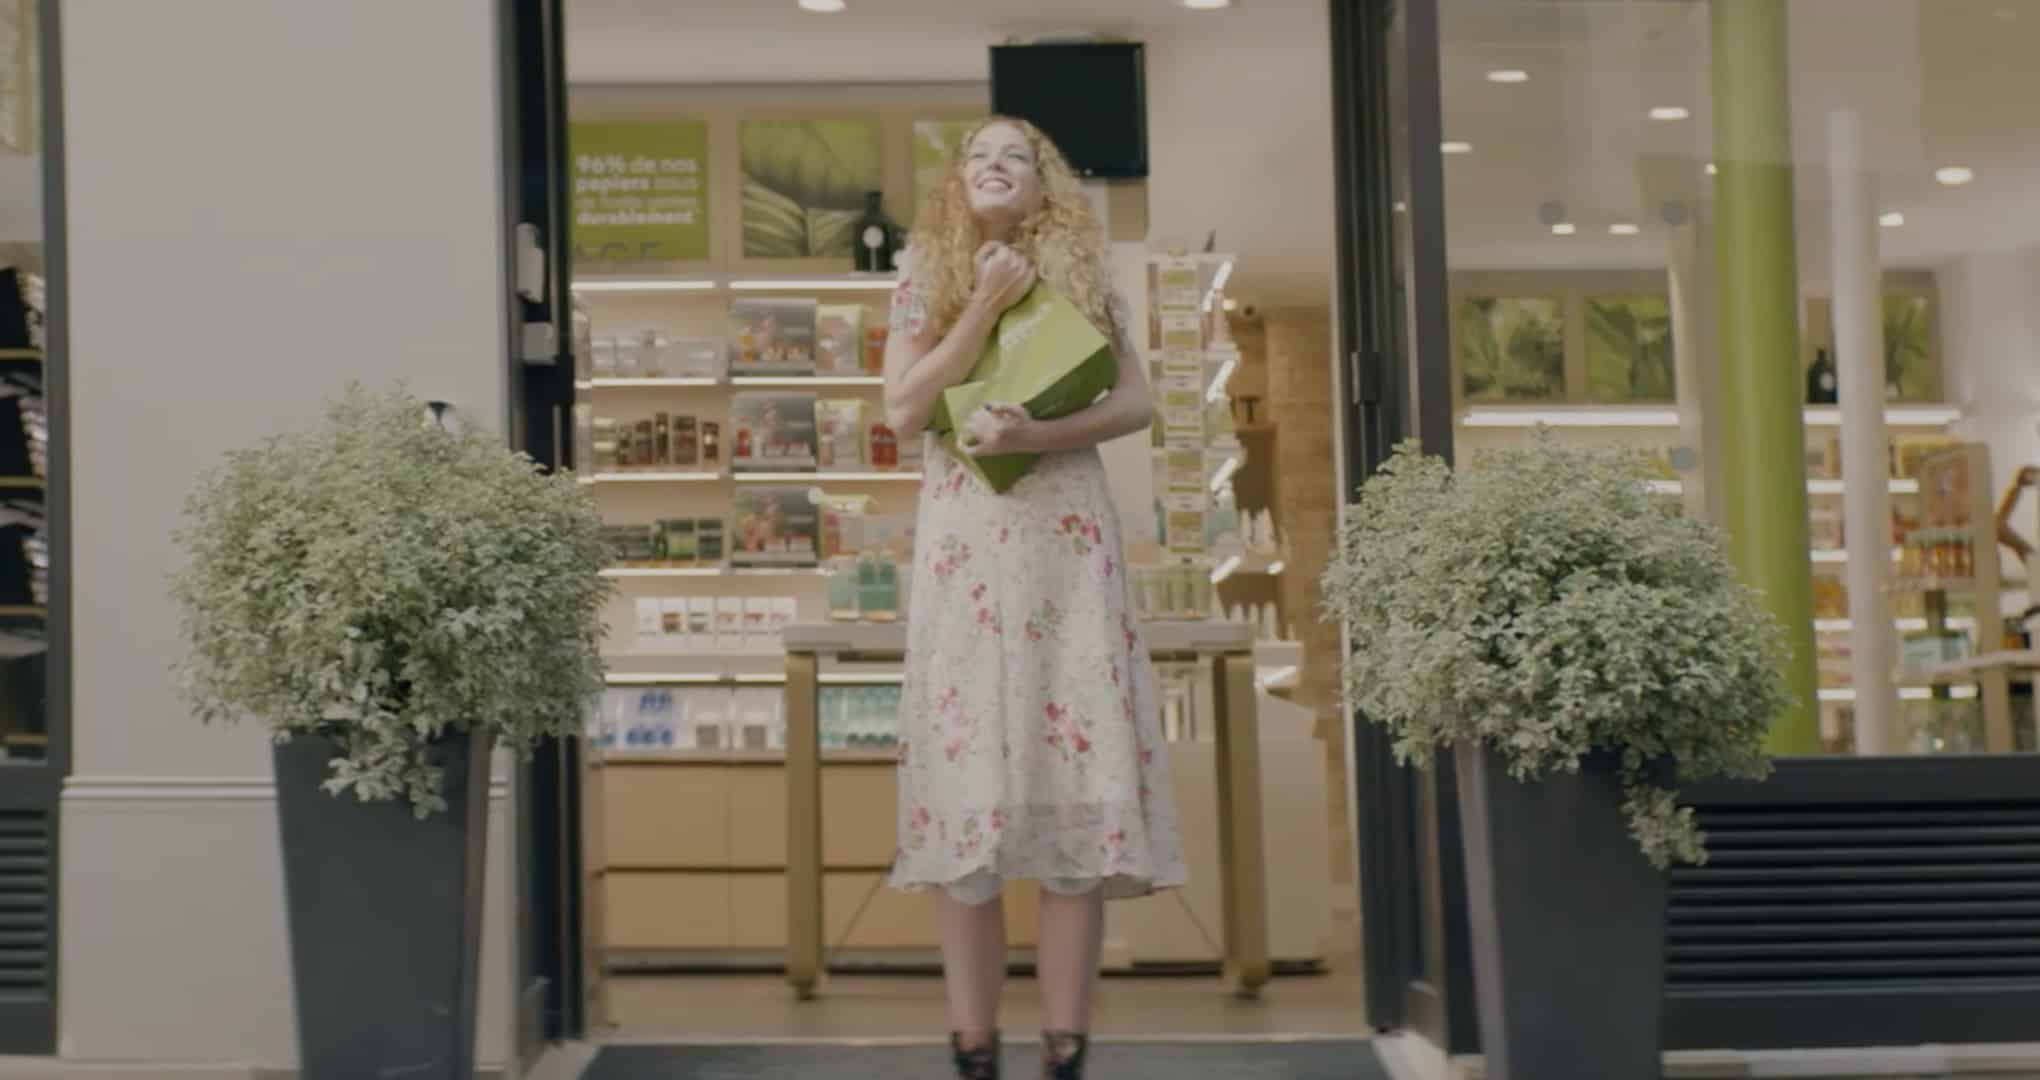 Une femme sort d’une boutique Yves rocher et sert un sac en carton de l’enseigne dans ses bras